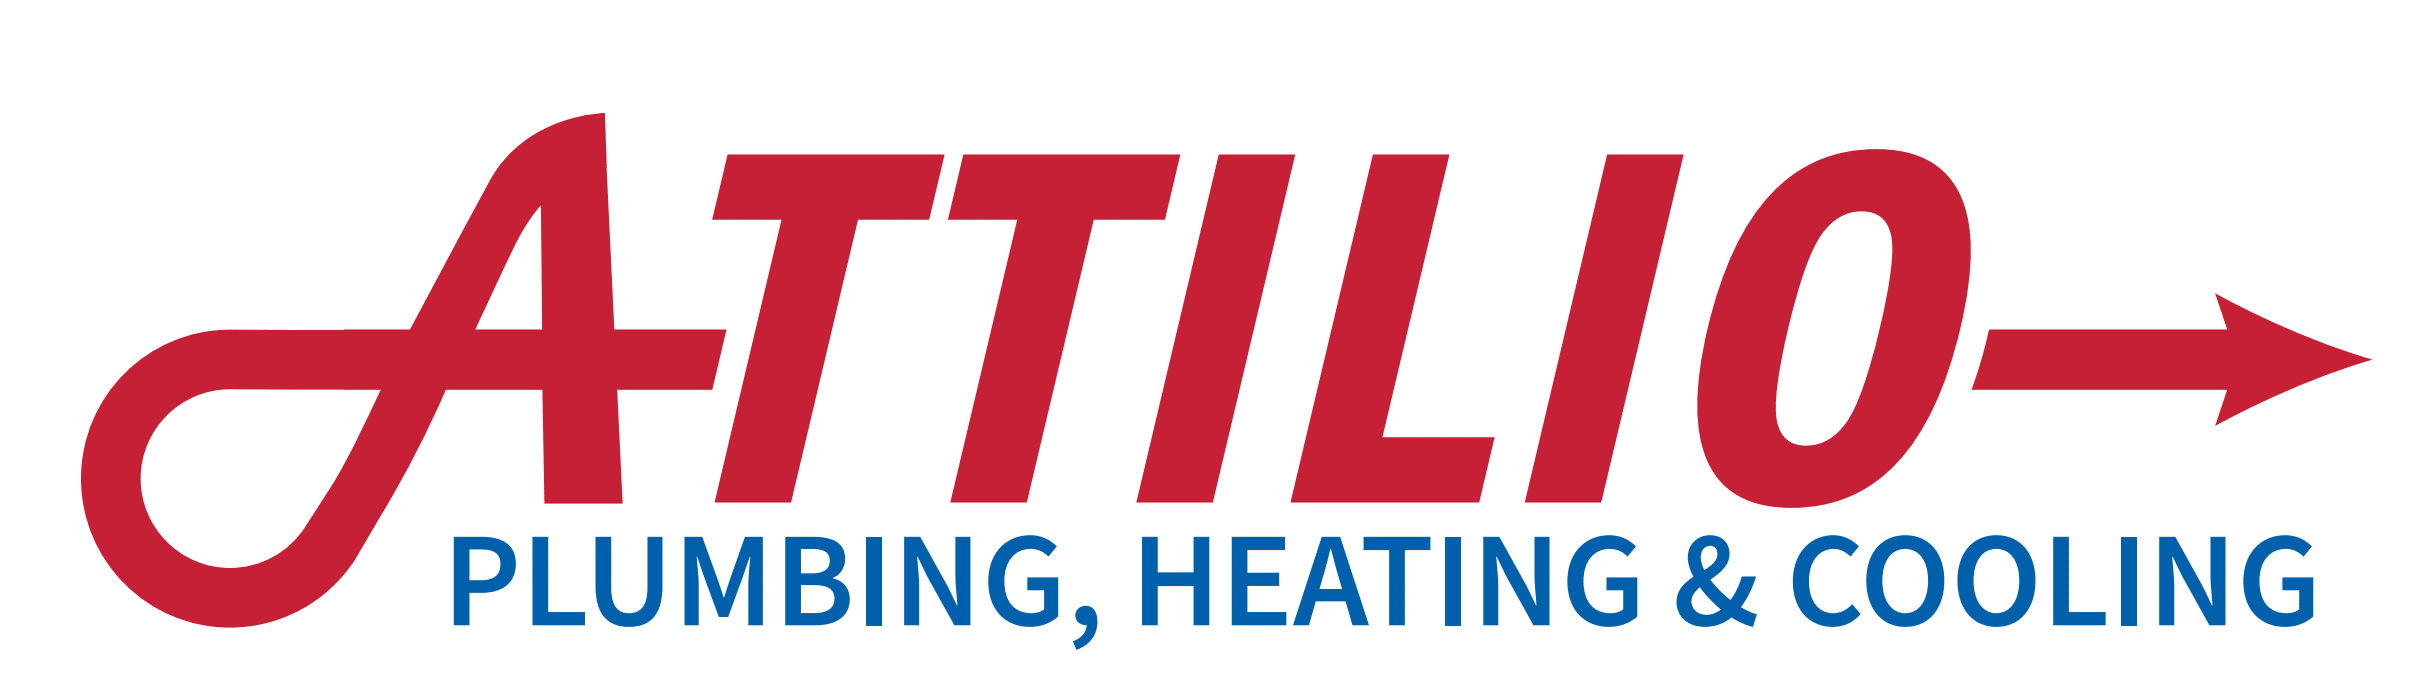 Attilio plumbing heating & cooling logo